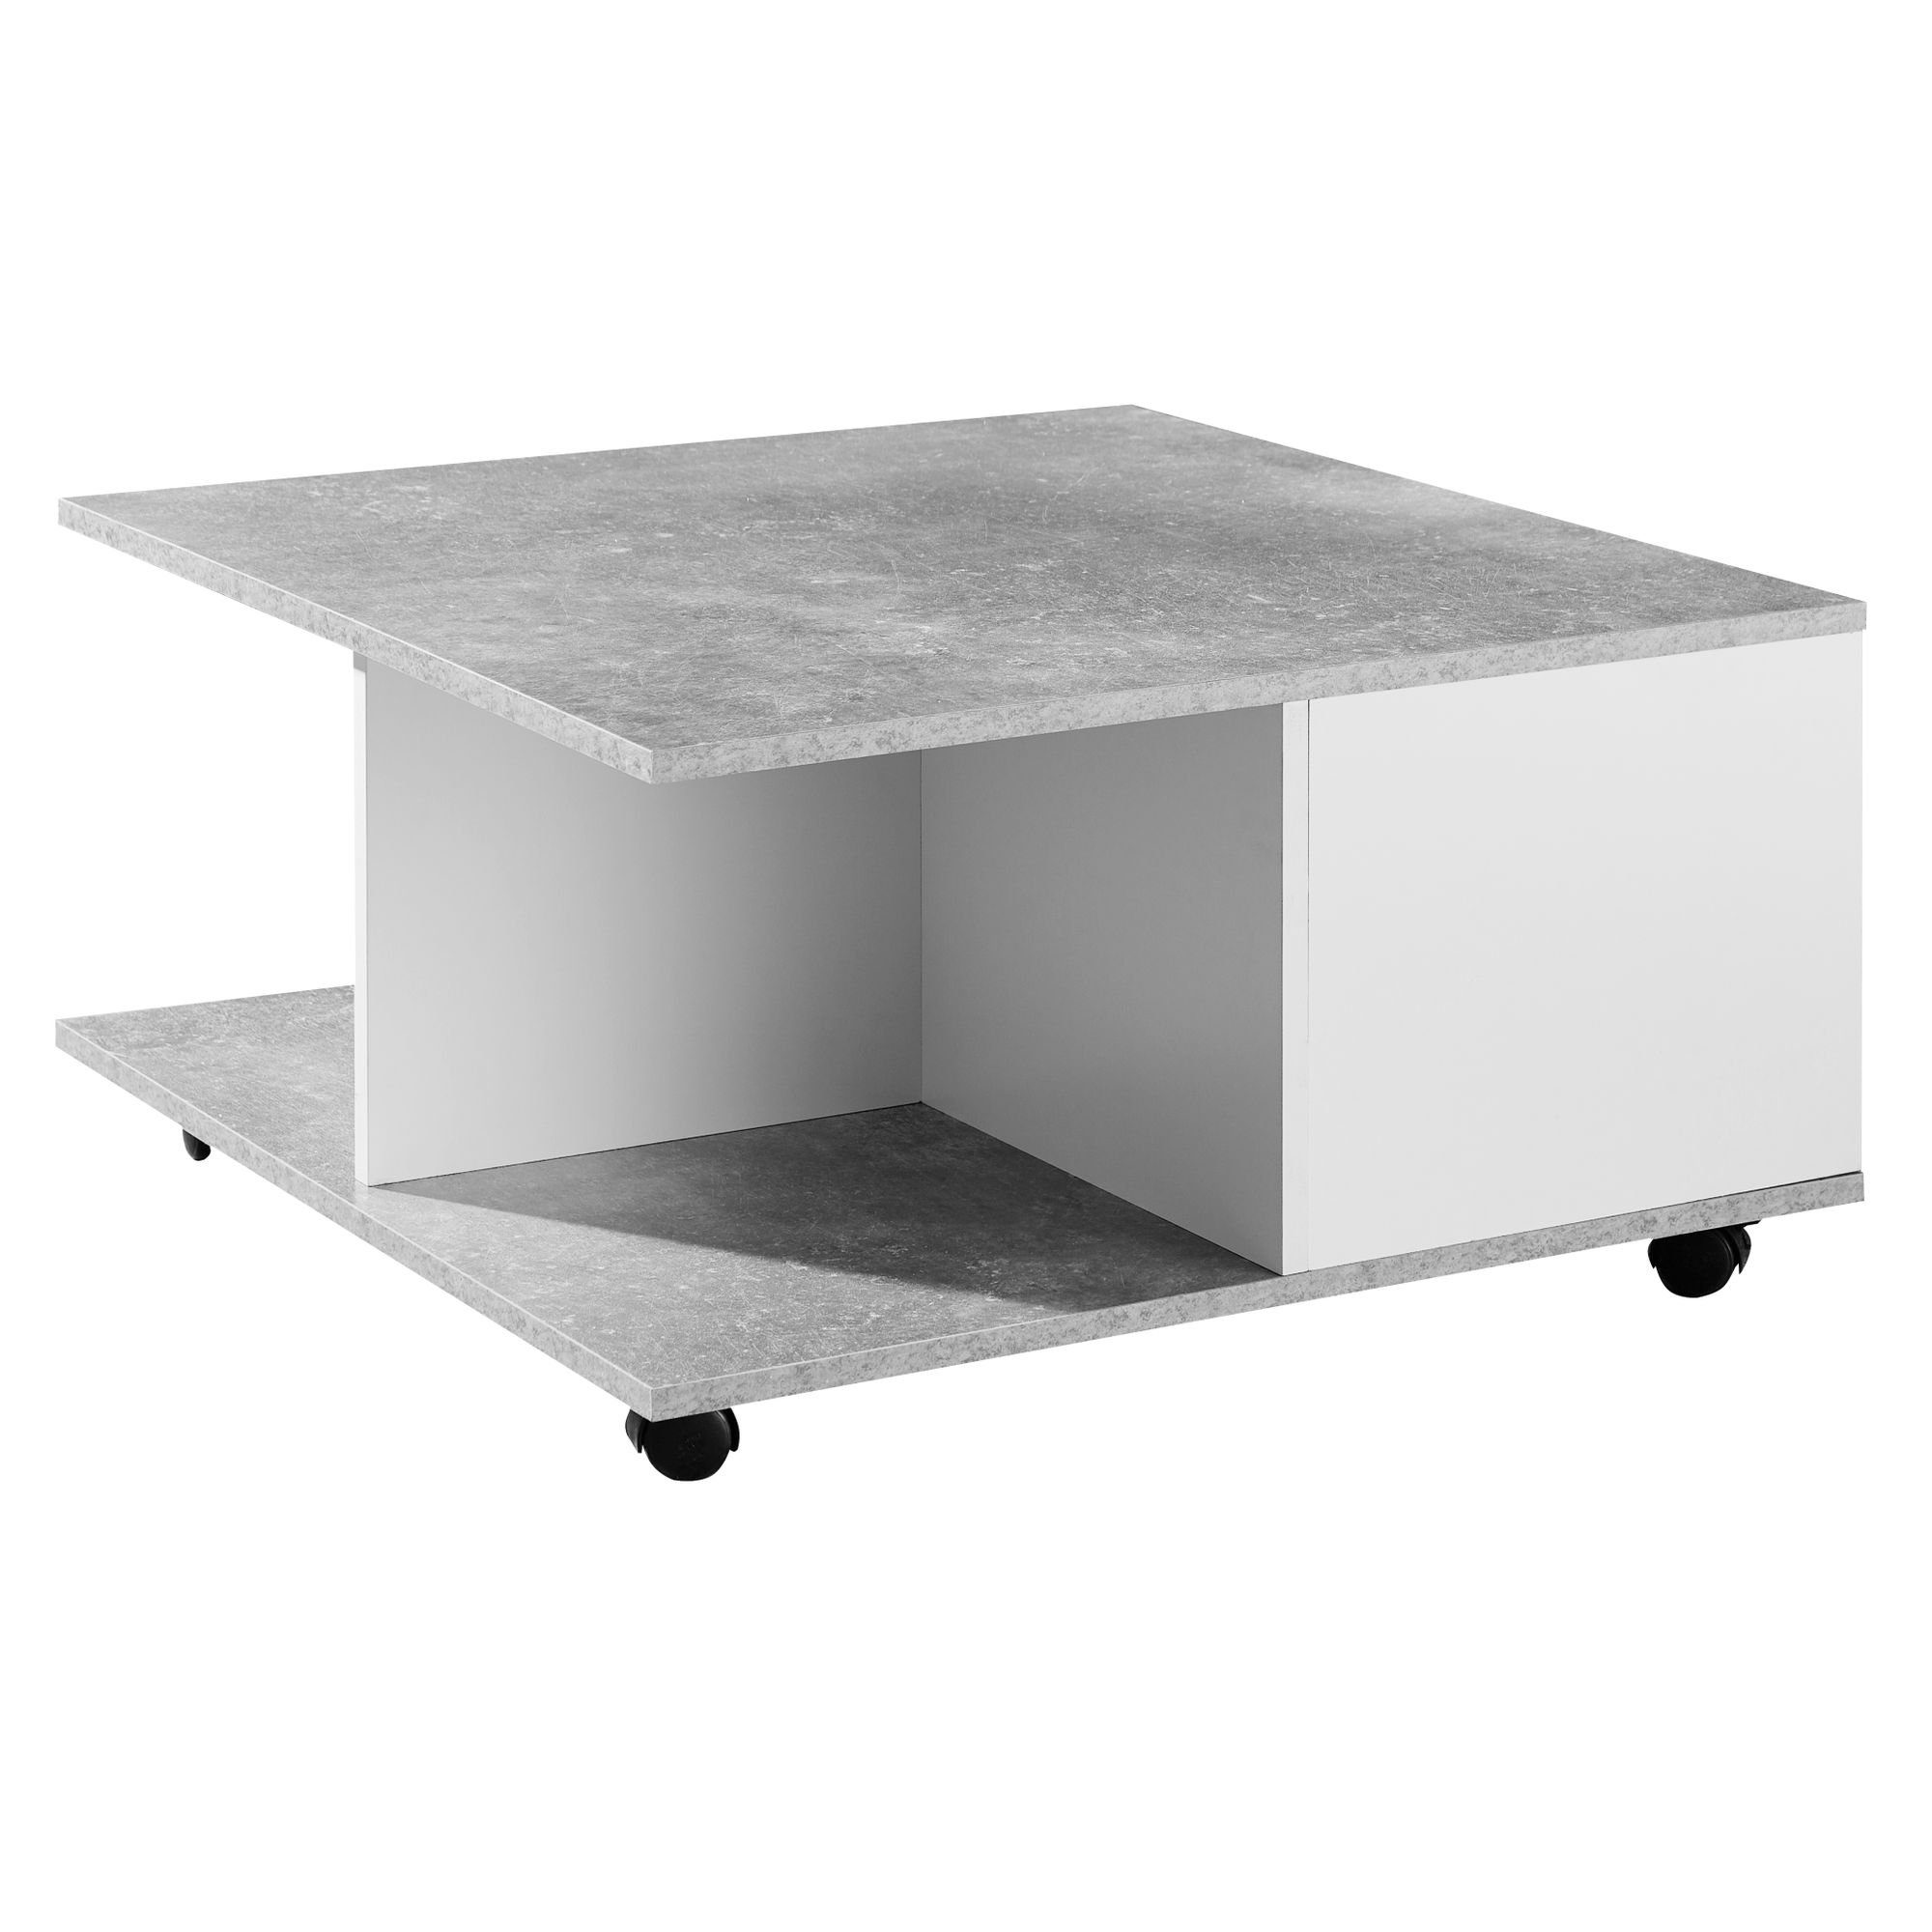 Wohnling Couchtisch WL6.065 (70x70 cm Zementgrau / Weiß, Sofatisch Eckig), Wohnzimmertisch mit 2 Schubladen, Tisch mit Rollen